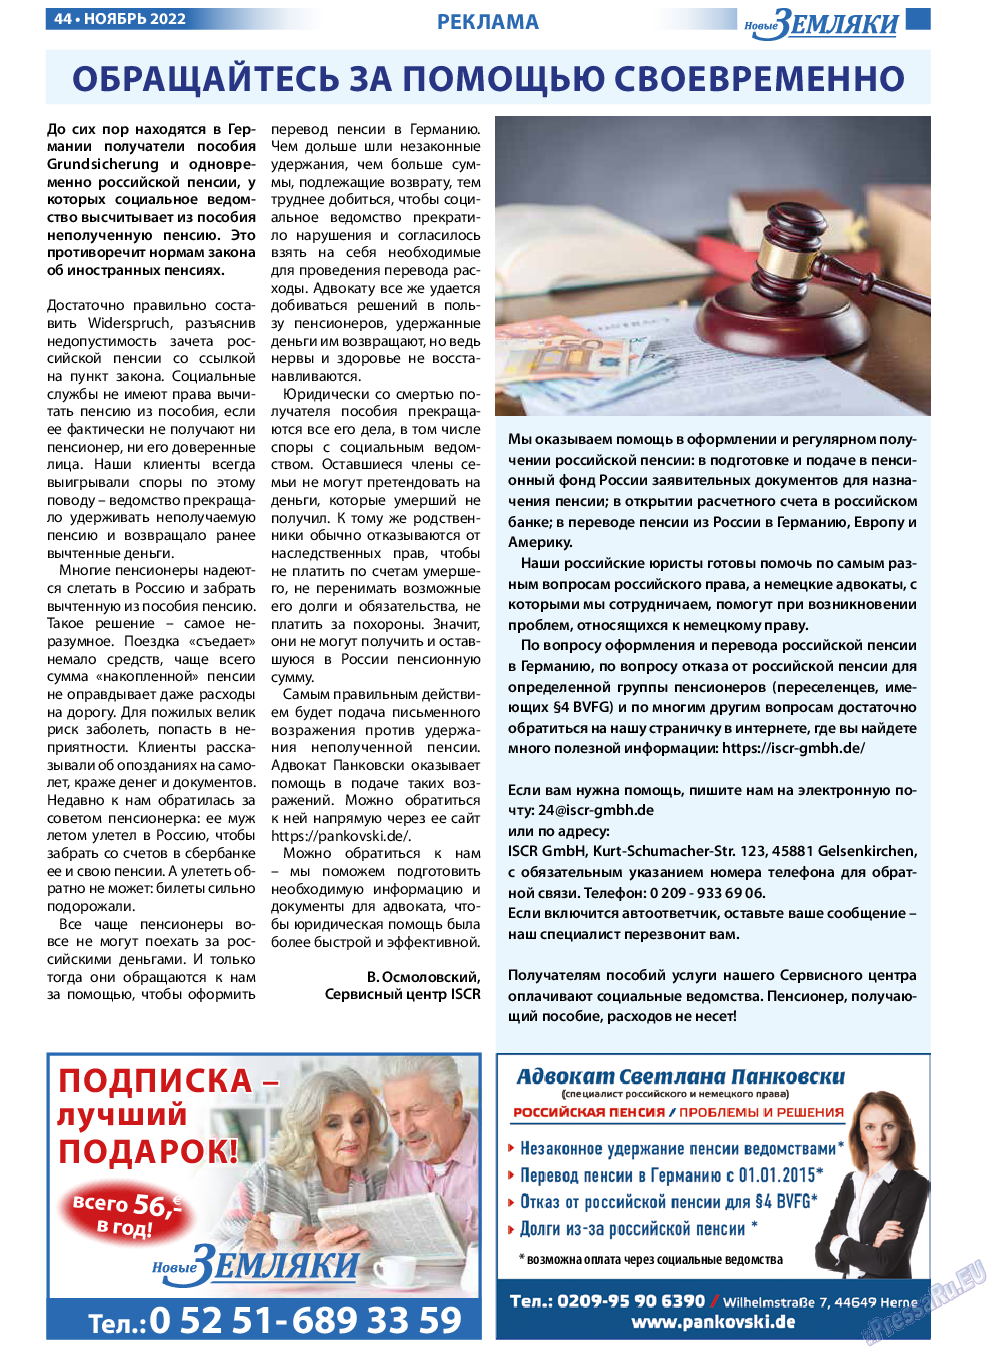 Новые Земляки, газета. 2022 №11 стр.44